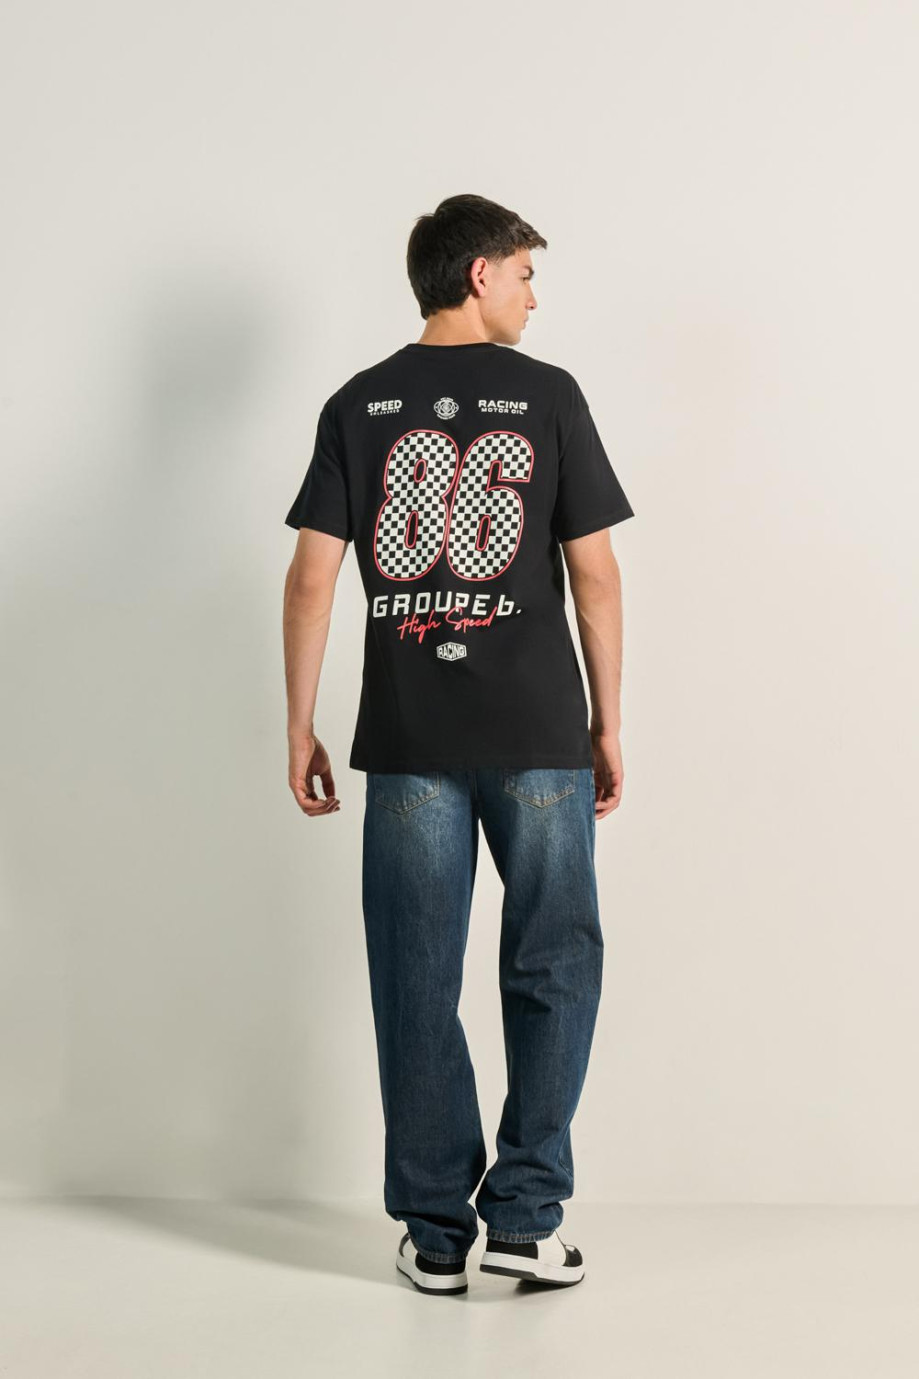 Camiseta unicolor manga corta con diseño racer en espalda